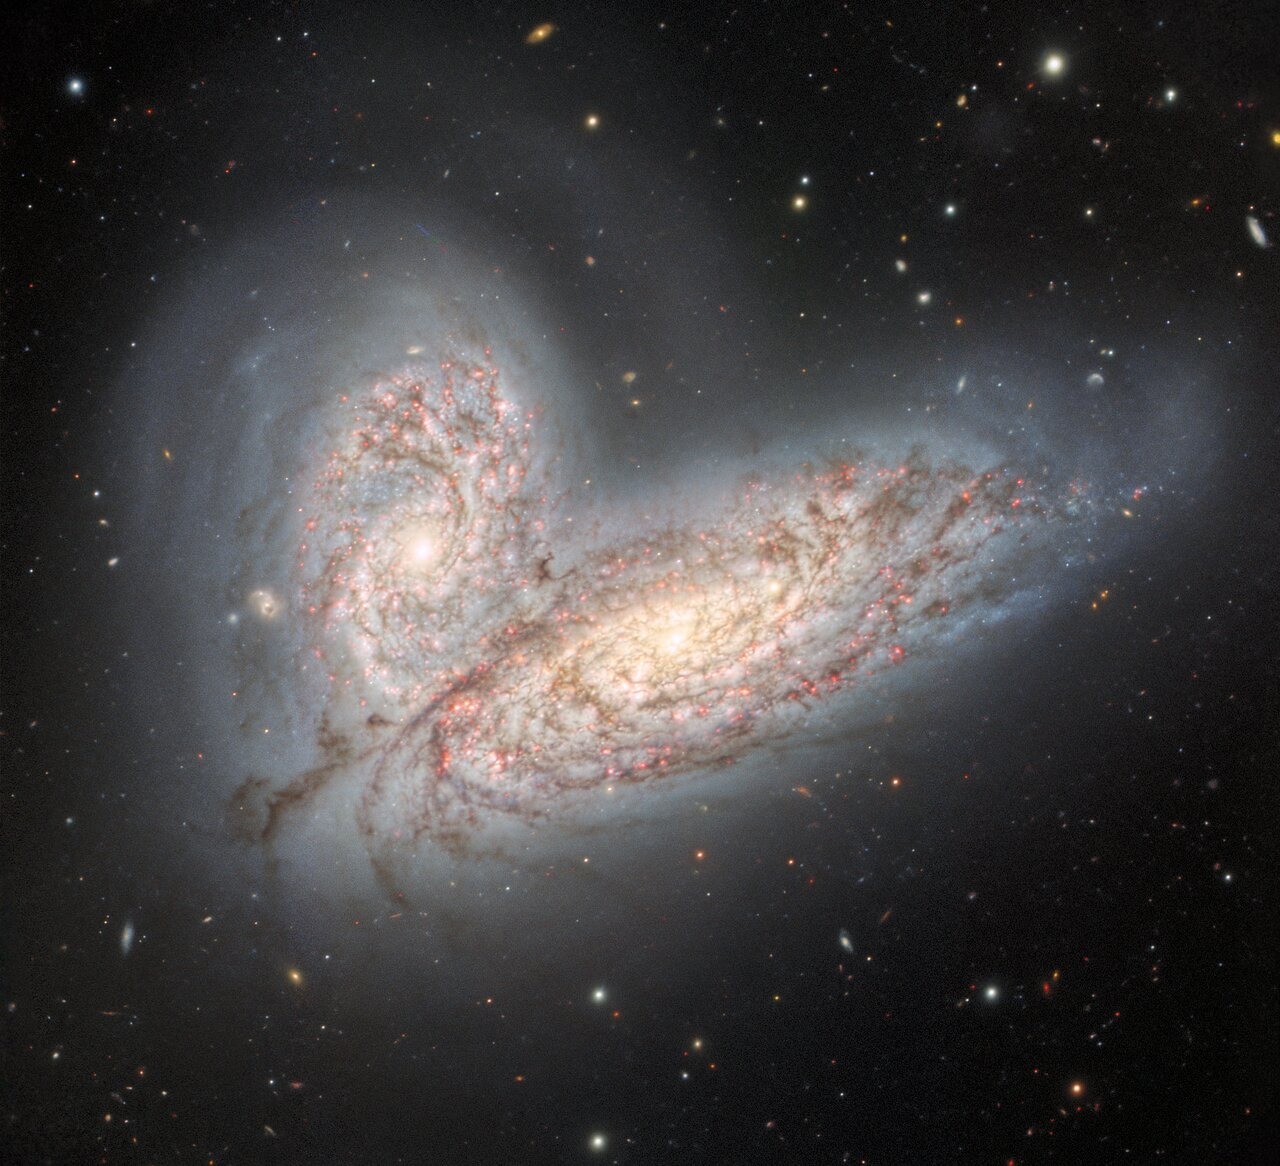 Nova slika snimljena teleskopom Gemini North na Havajima otkriva par spiralnih galaksija u interakciji – NGC 4568 (dolje) i NGC 4567 (gore) – na početku procesa spajanja (©International Gemini Observatory/NOIRLab/NSF/AURA).